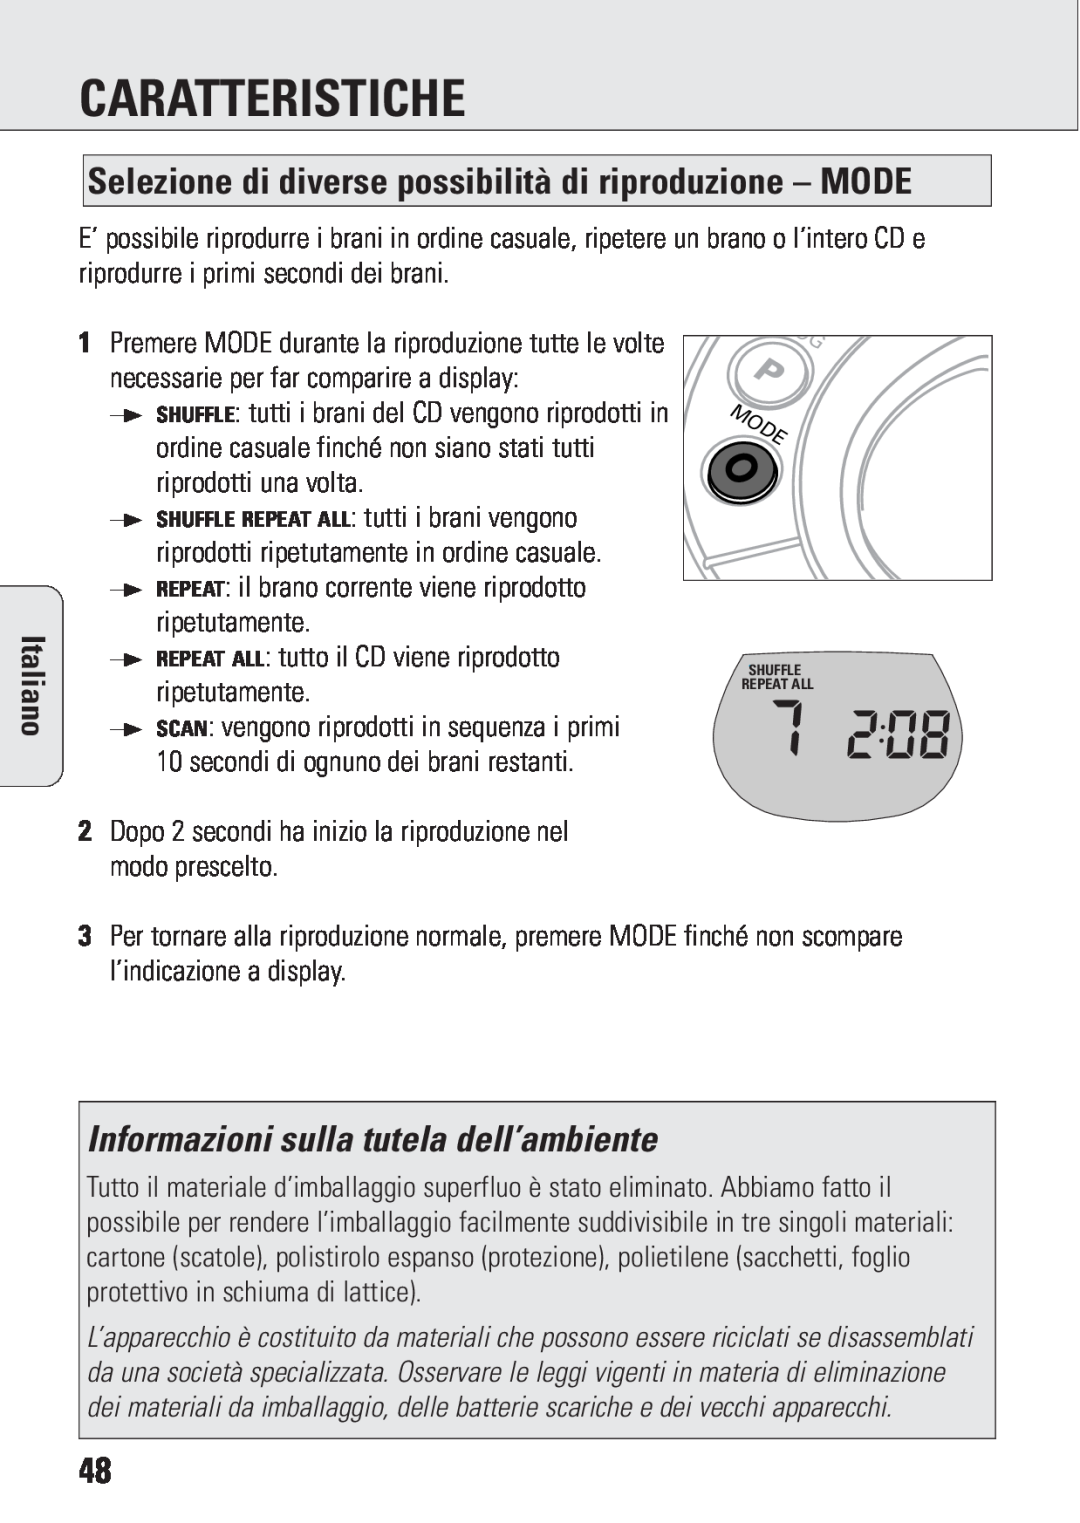 Philips ACT 7583 manual Informazioni sulla tutela dell’ambiente, Caratteristiche, Italiano 